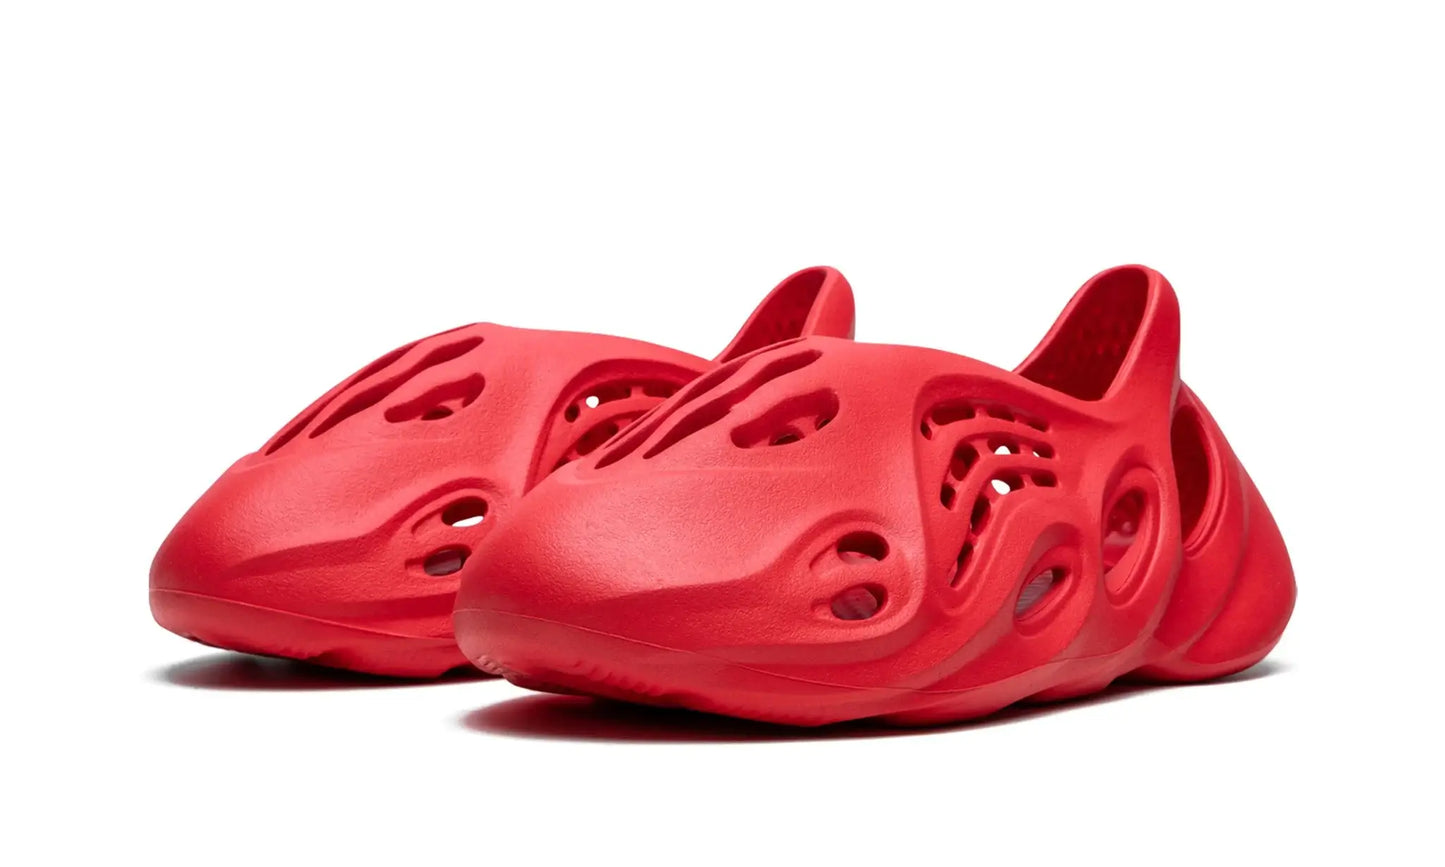 Tênis Adidas Yeezy Foam Runner "Vermillion"